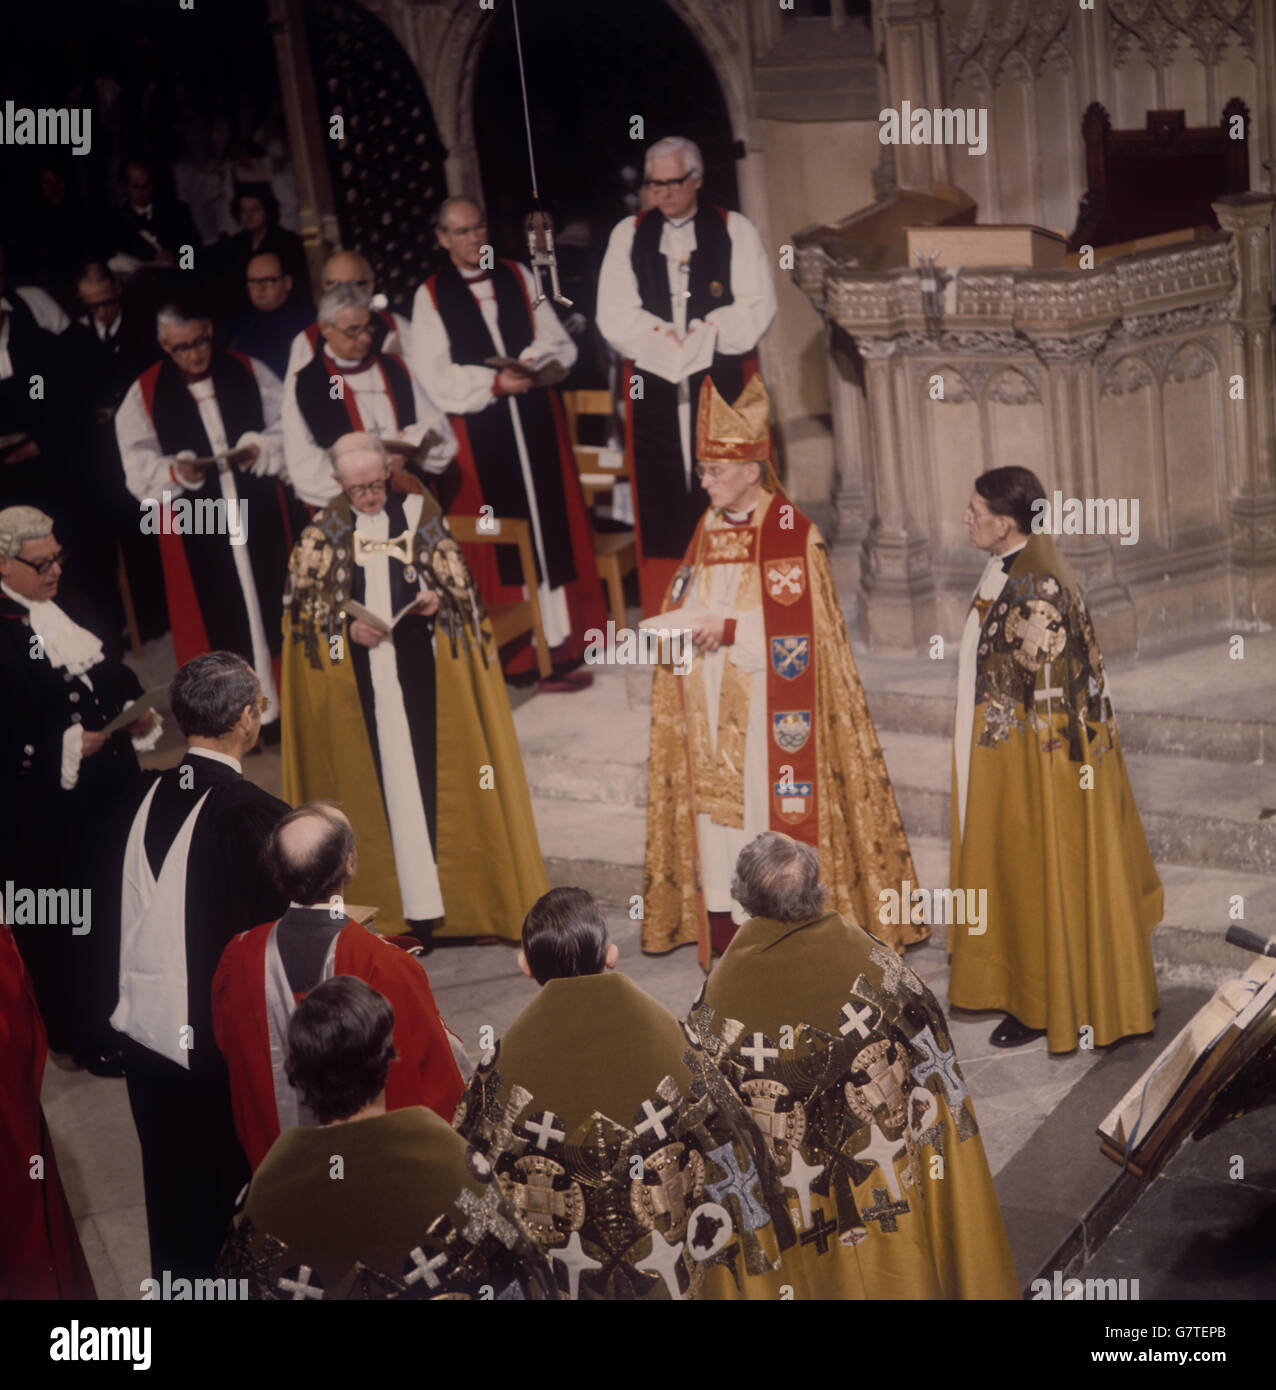 Il Dr. Donald Coggan, nuovo arcivescovo di Canterbury, Primate di tutta l'Inghilterra, si trova di fronte al trono episcopale durante il suo introno nella Cattedrale di Canterbury. Foto Stock